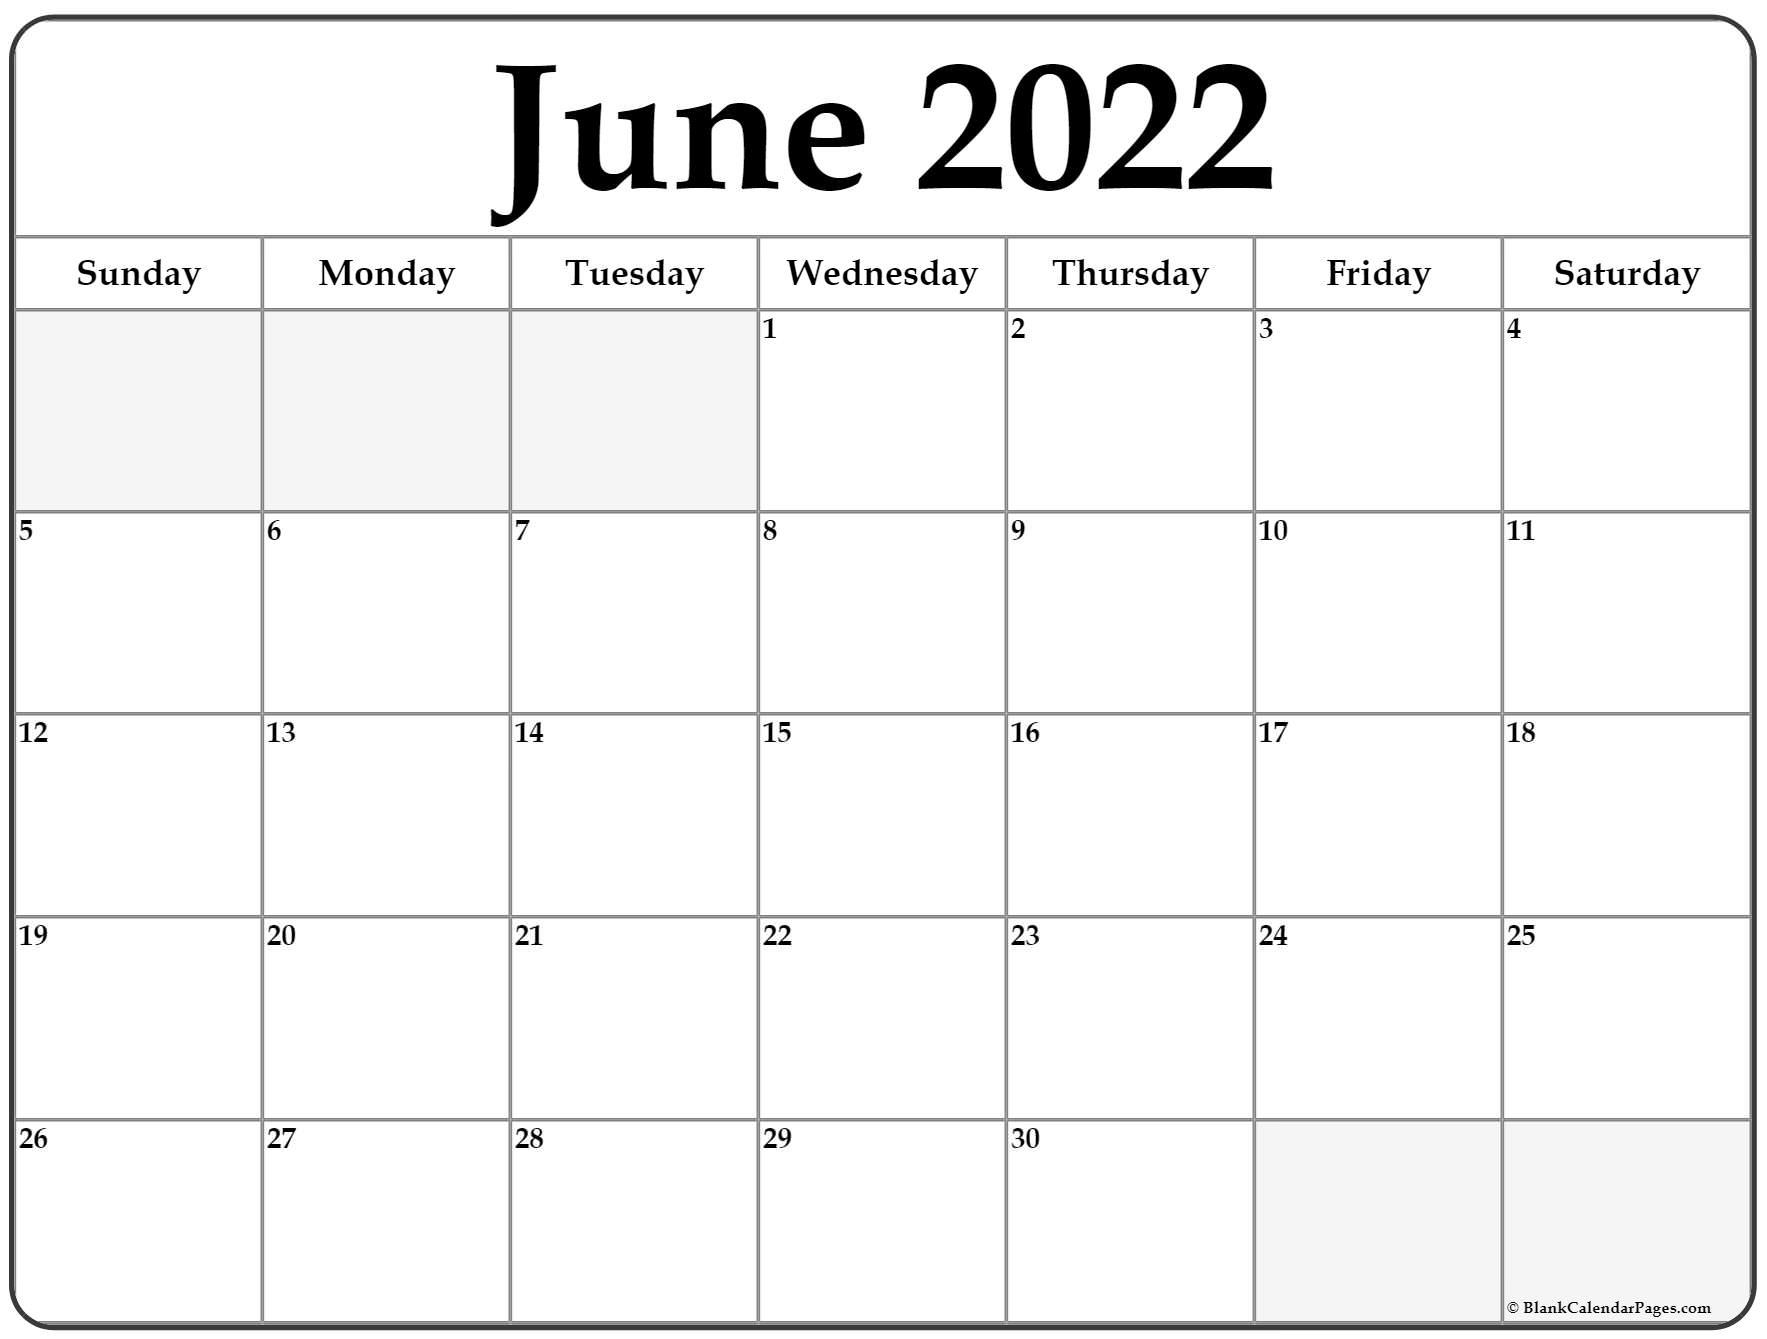 August 2023 Through June 2022 Calendar - September